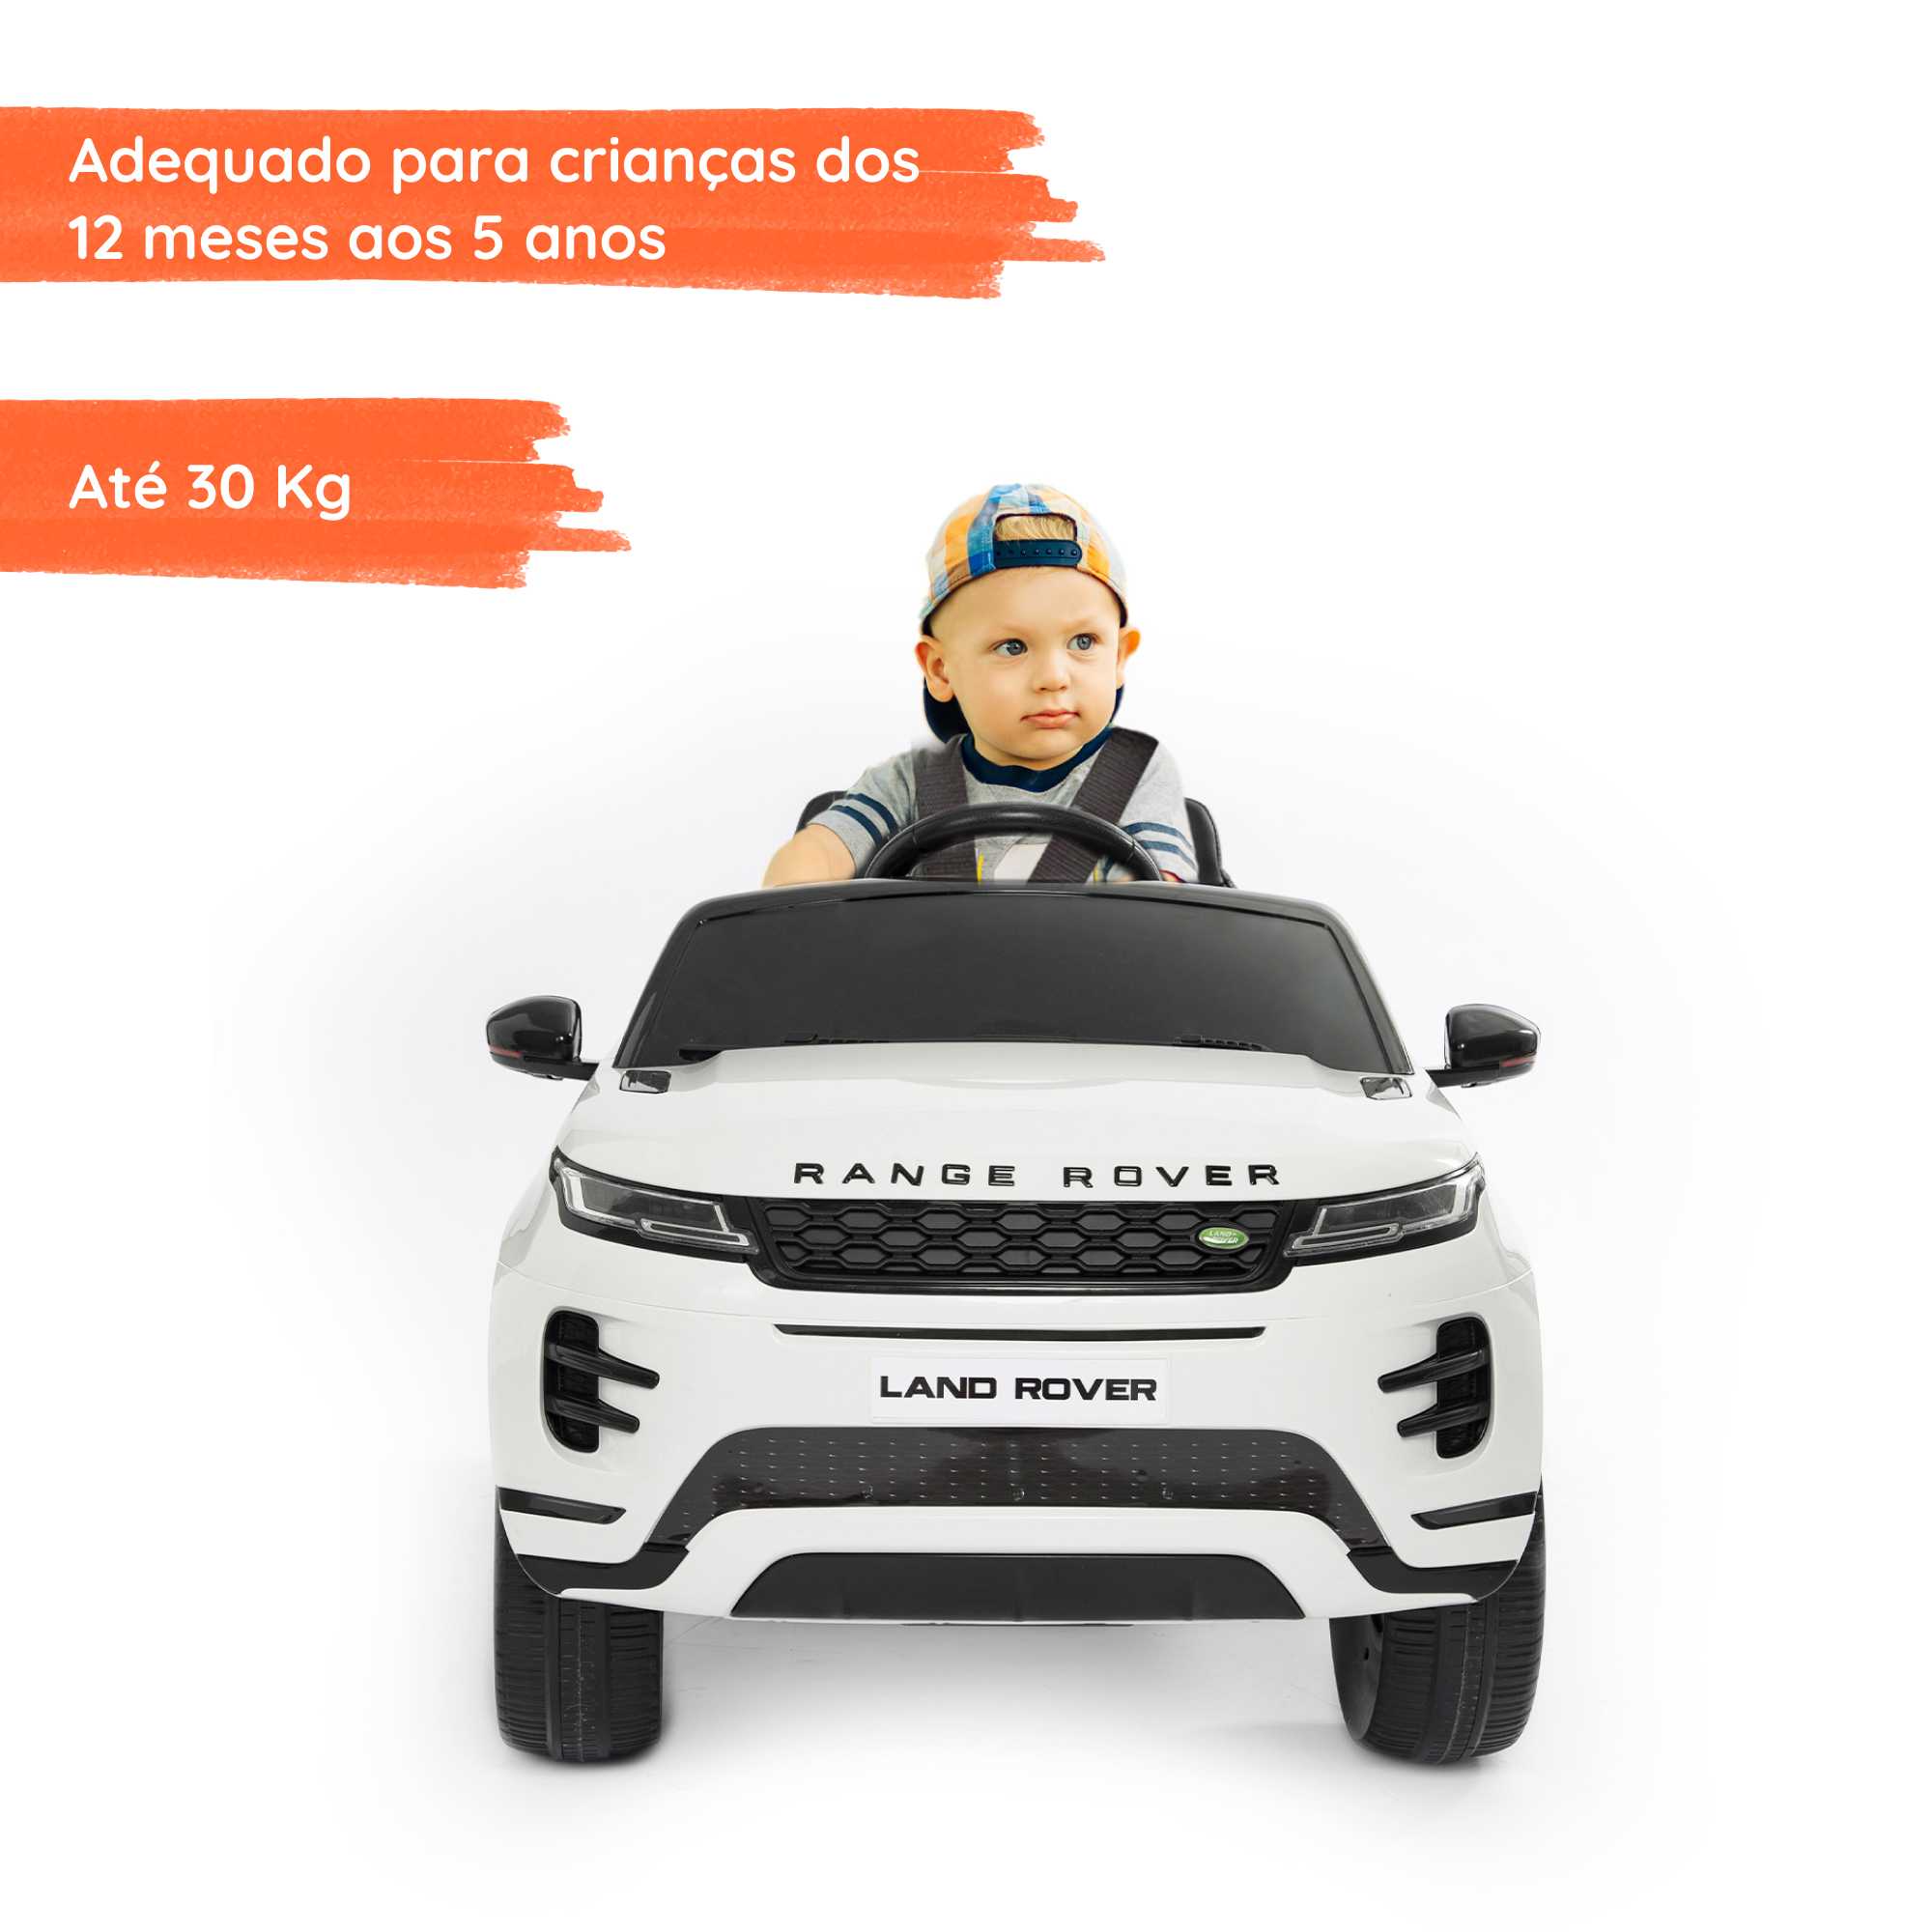 Range Rover Evoque branco com criança